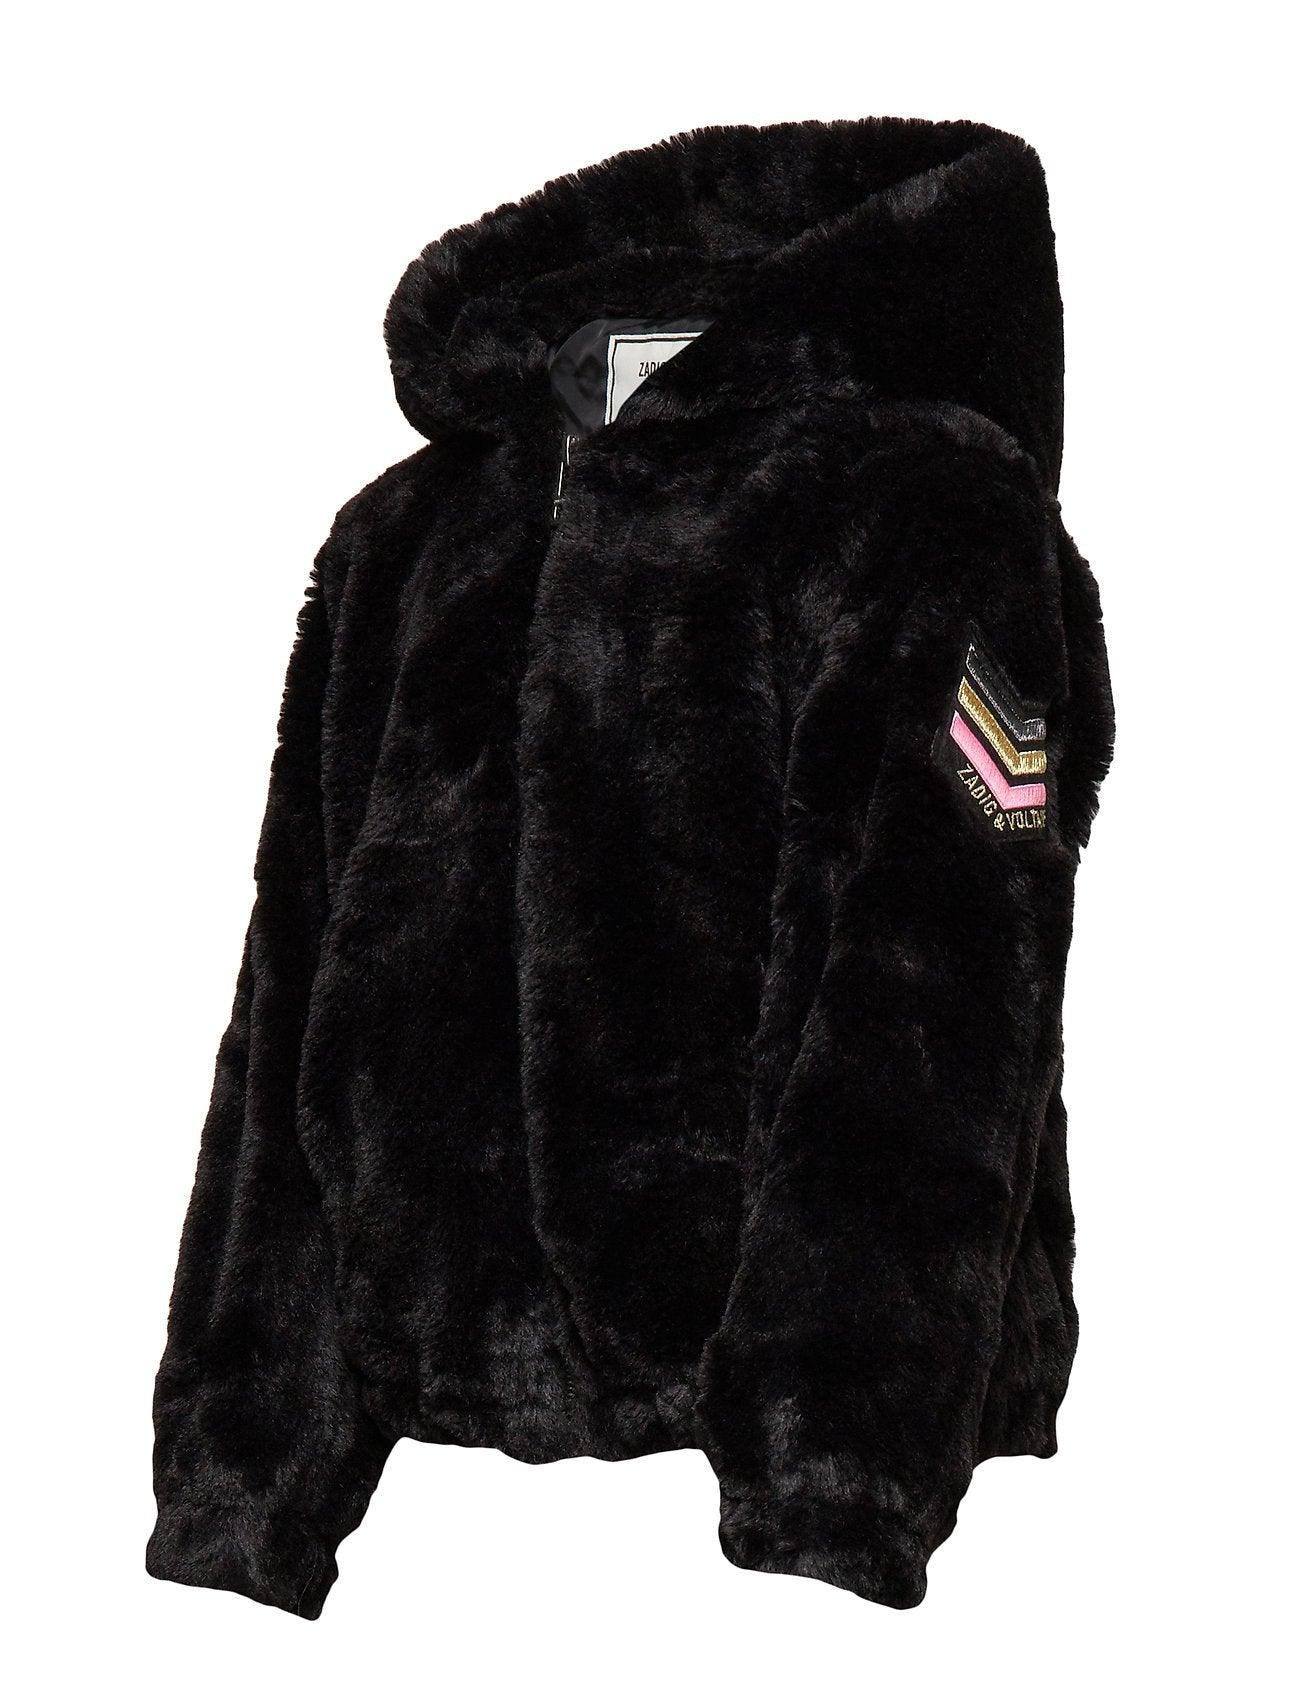 Malia Fur Black Leather Jacket